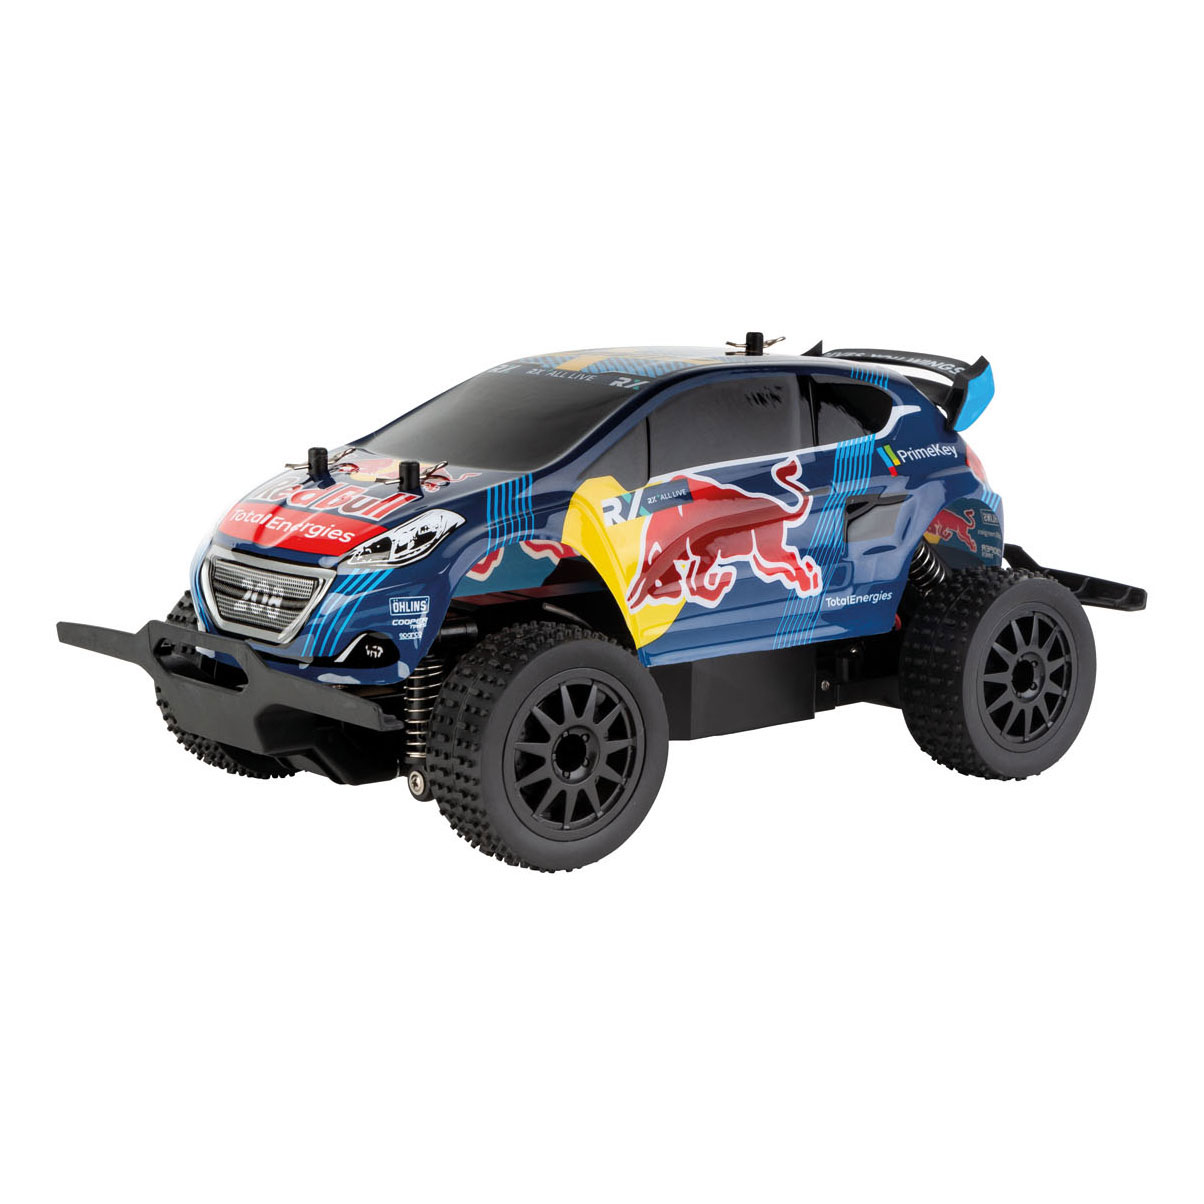 Detecteren element Onbepaald Carrera RC Red Bull Rallycross Bestuurbare Auto - Het Speelgoedpaleis